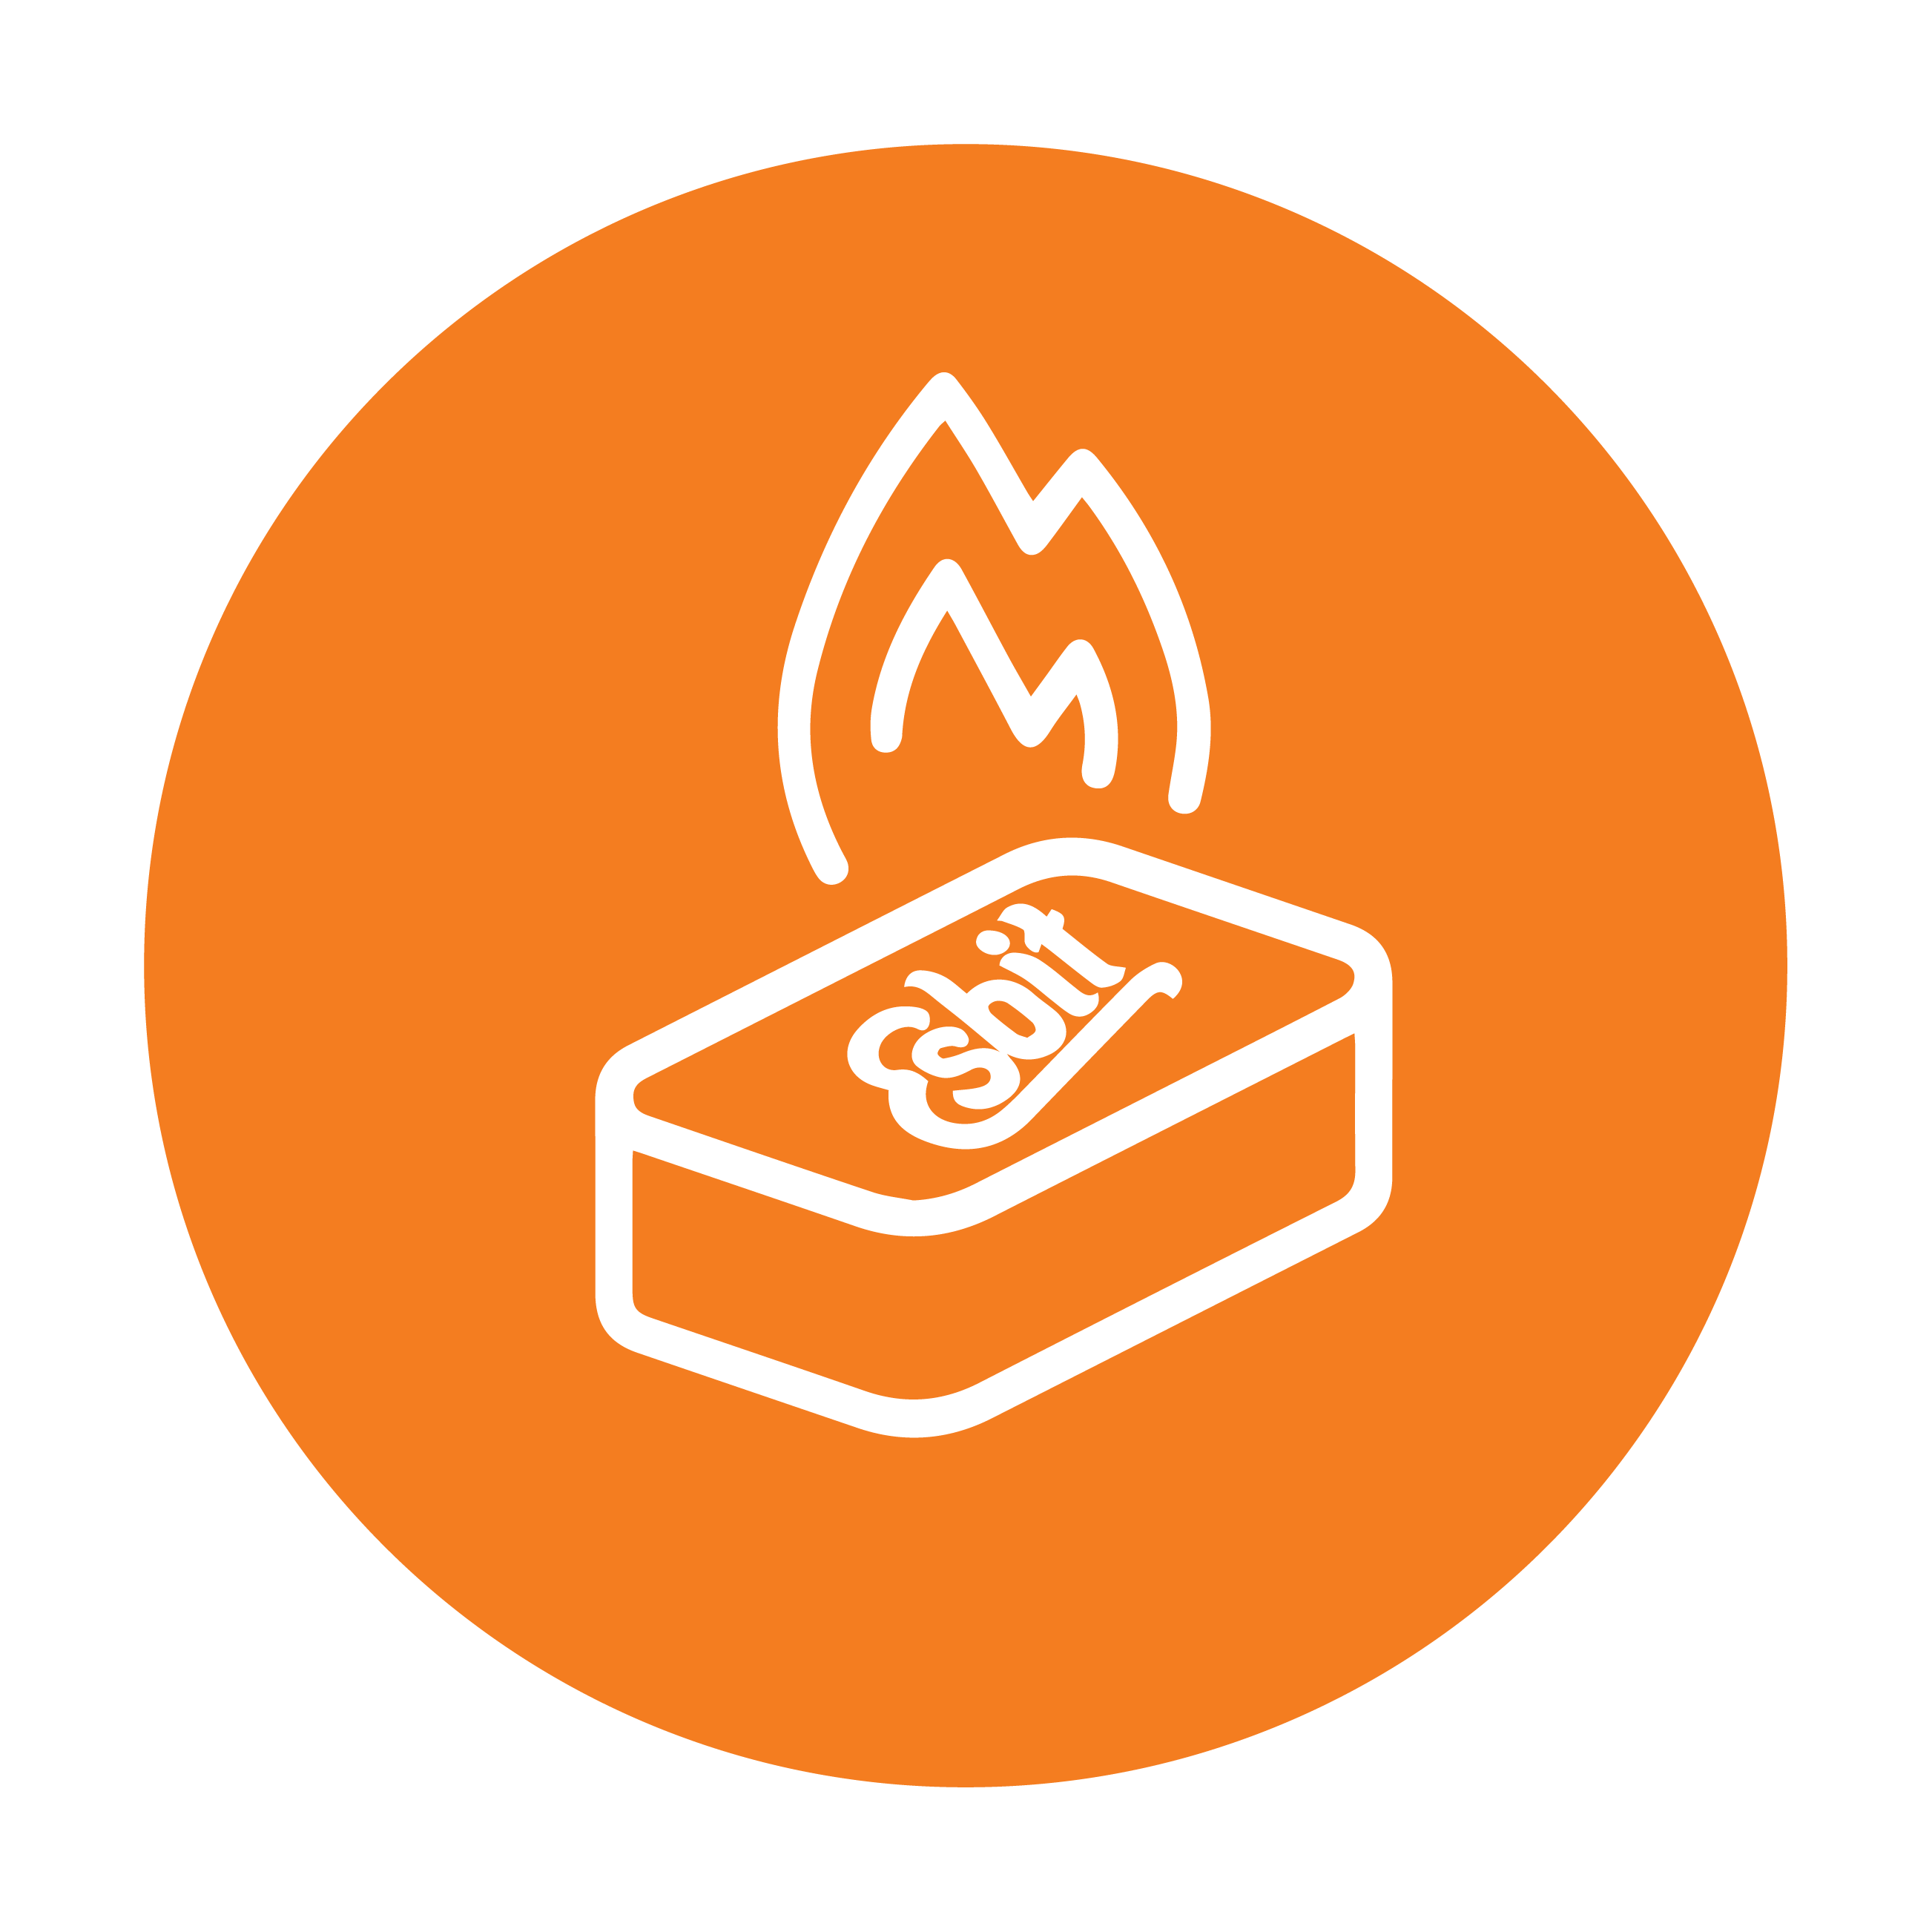 Esbit Icon in Orange zeigt brennende Trockenbrennstoff-Tablette als Piktogramm.